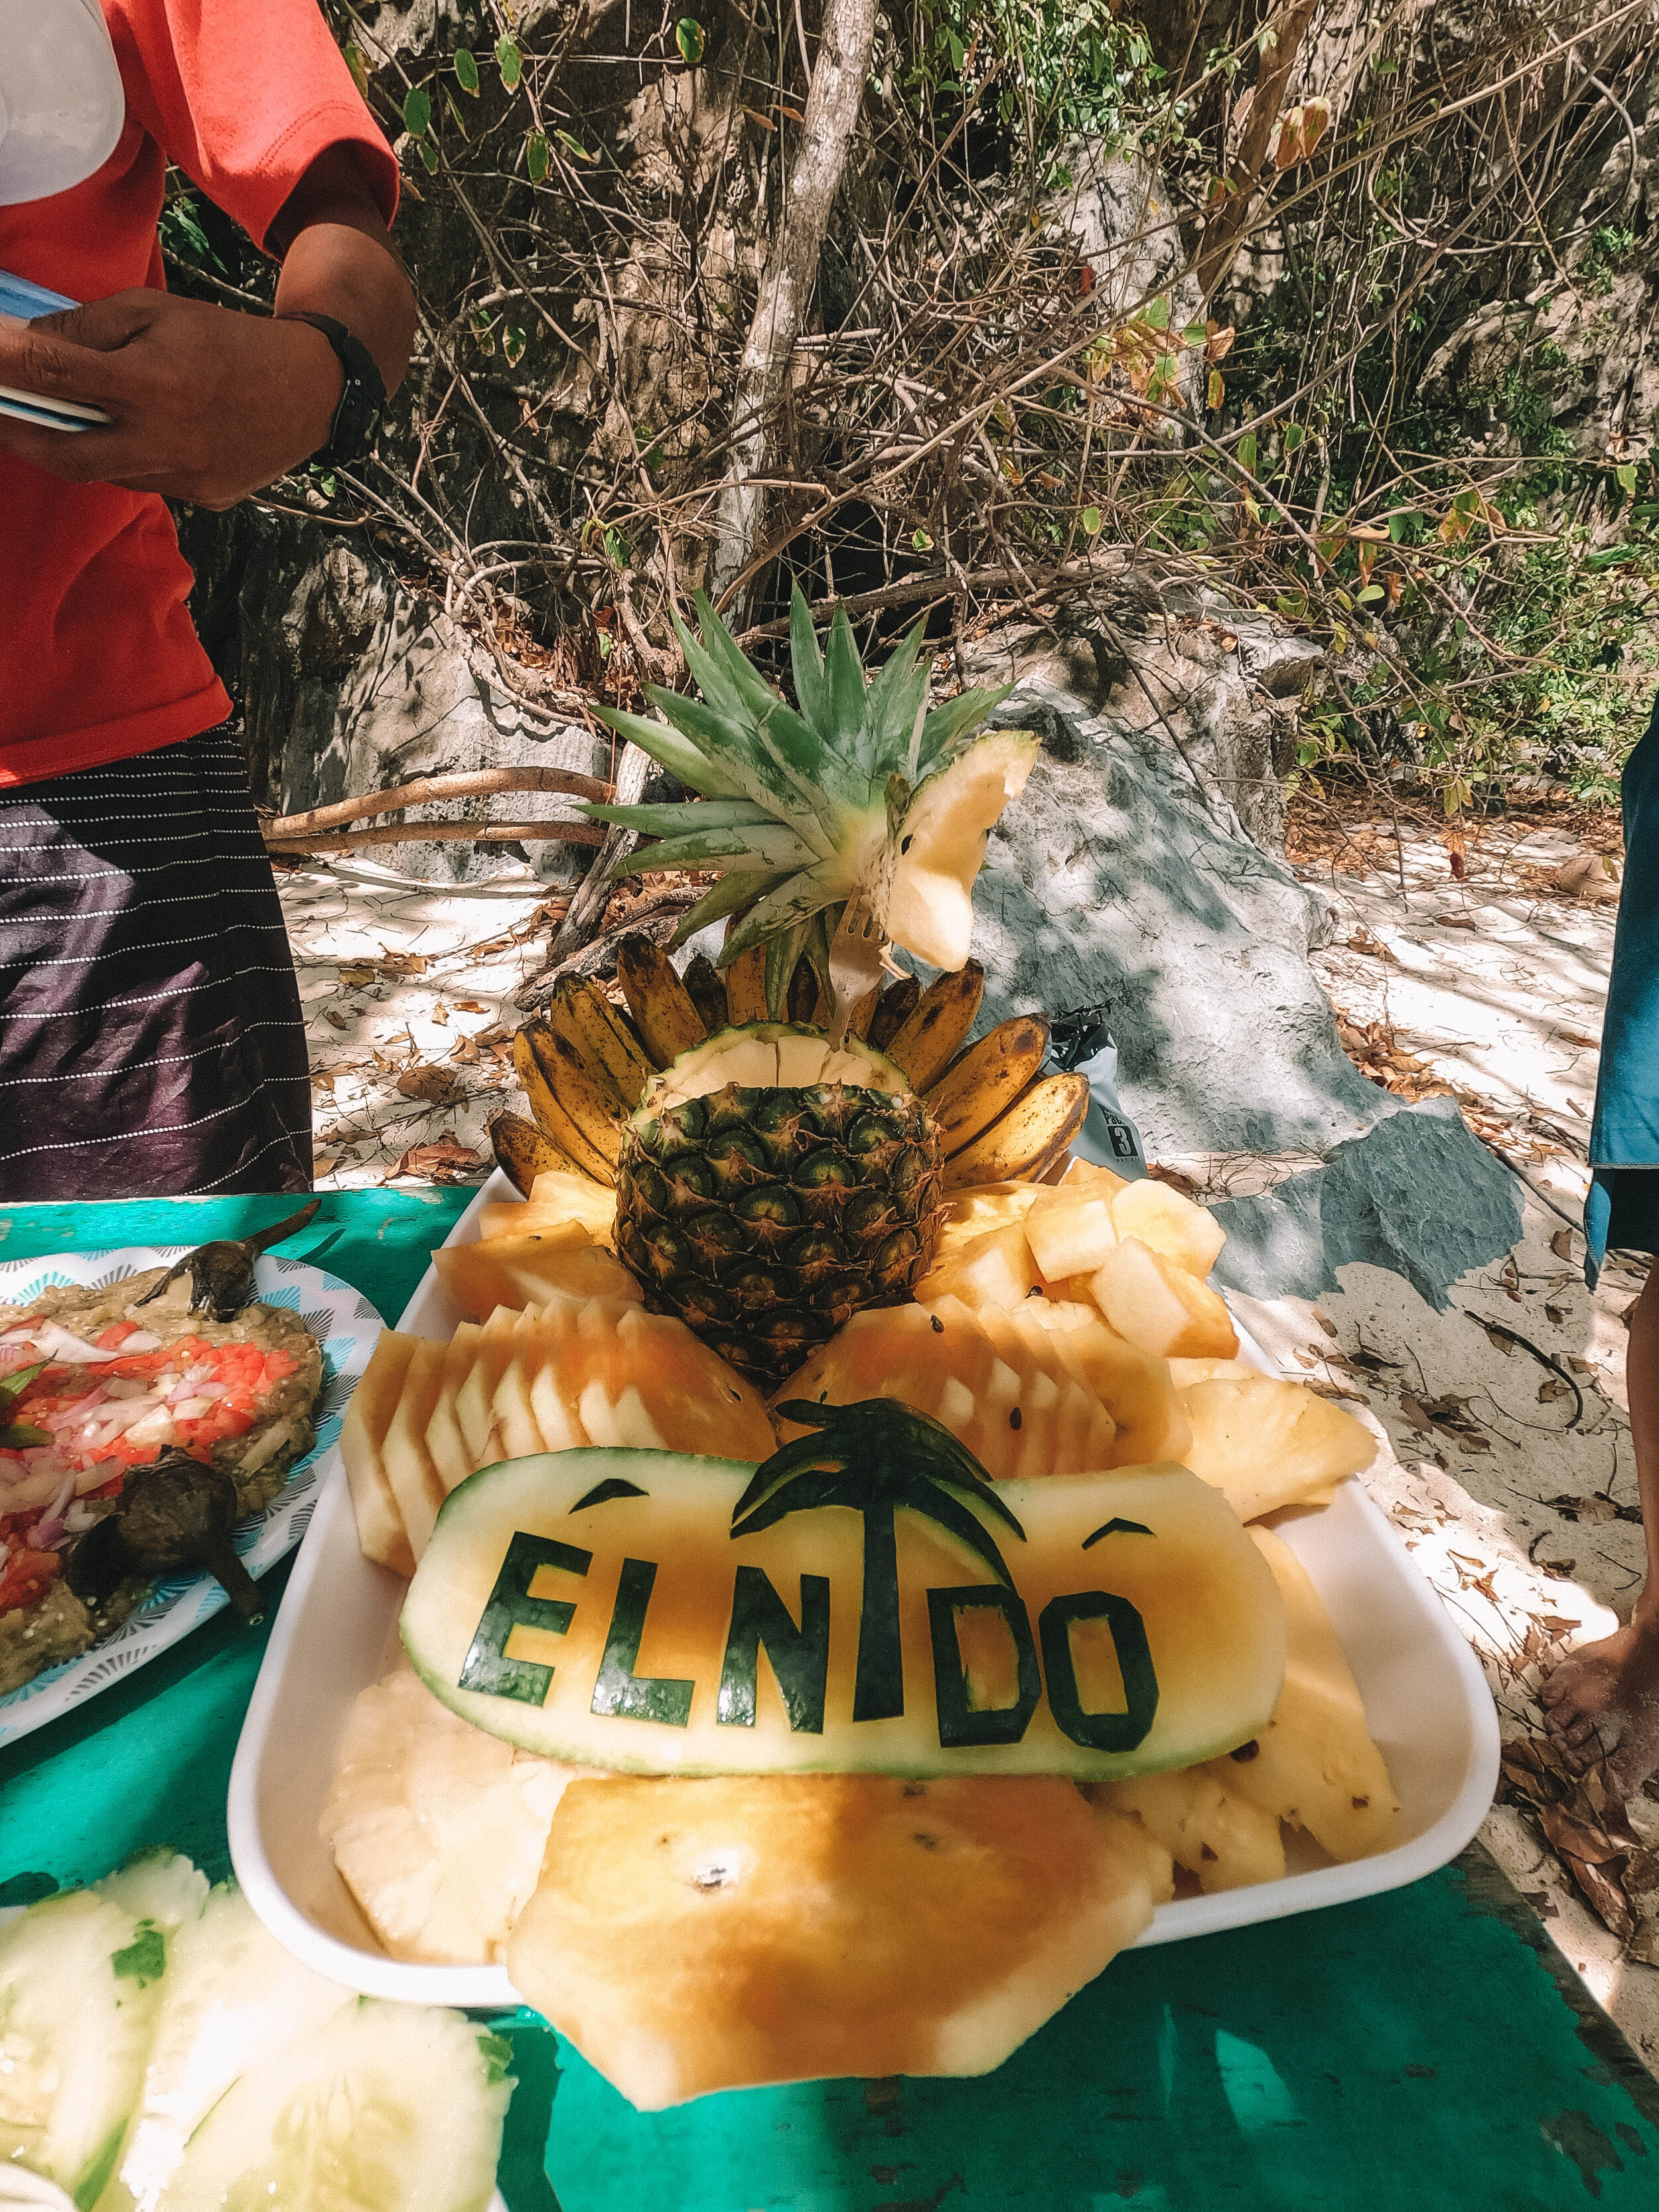 Notre lunch à la plage Paradise Beach - fruits frais (ananas, pastèque, bananes) - Excursion D - El Nido - Ile de Palawan - Philippines